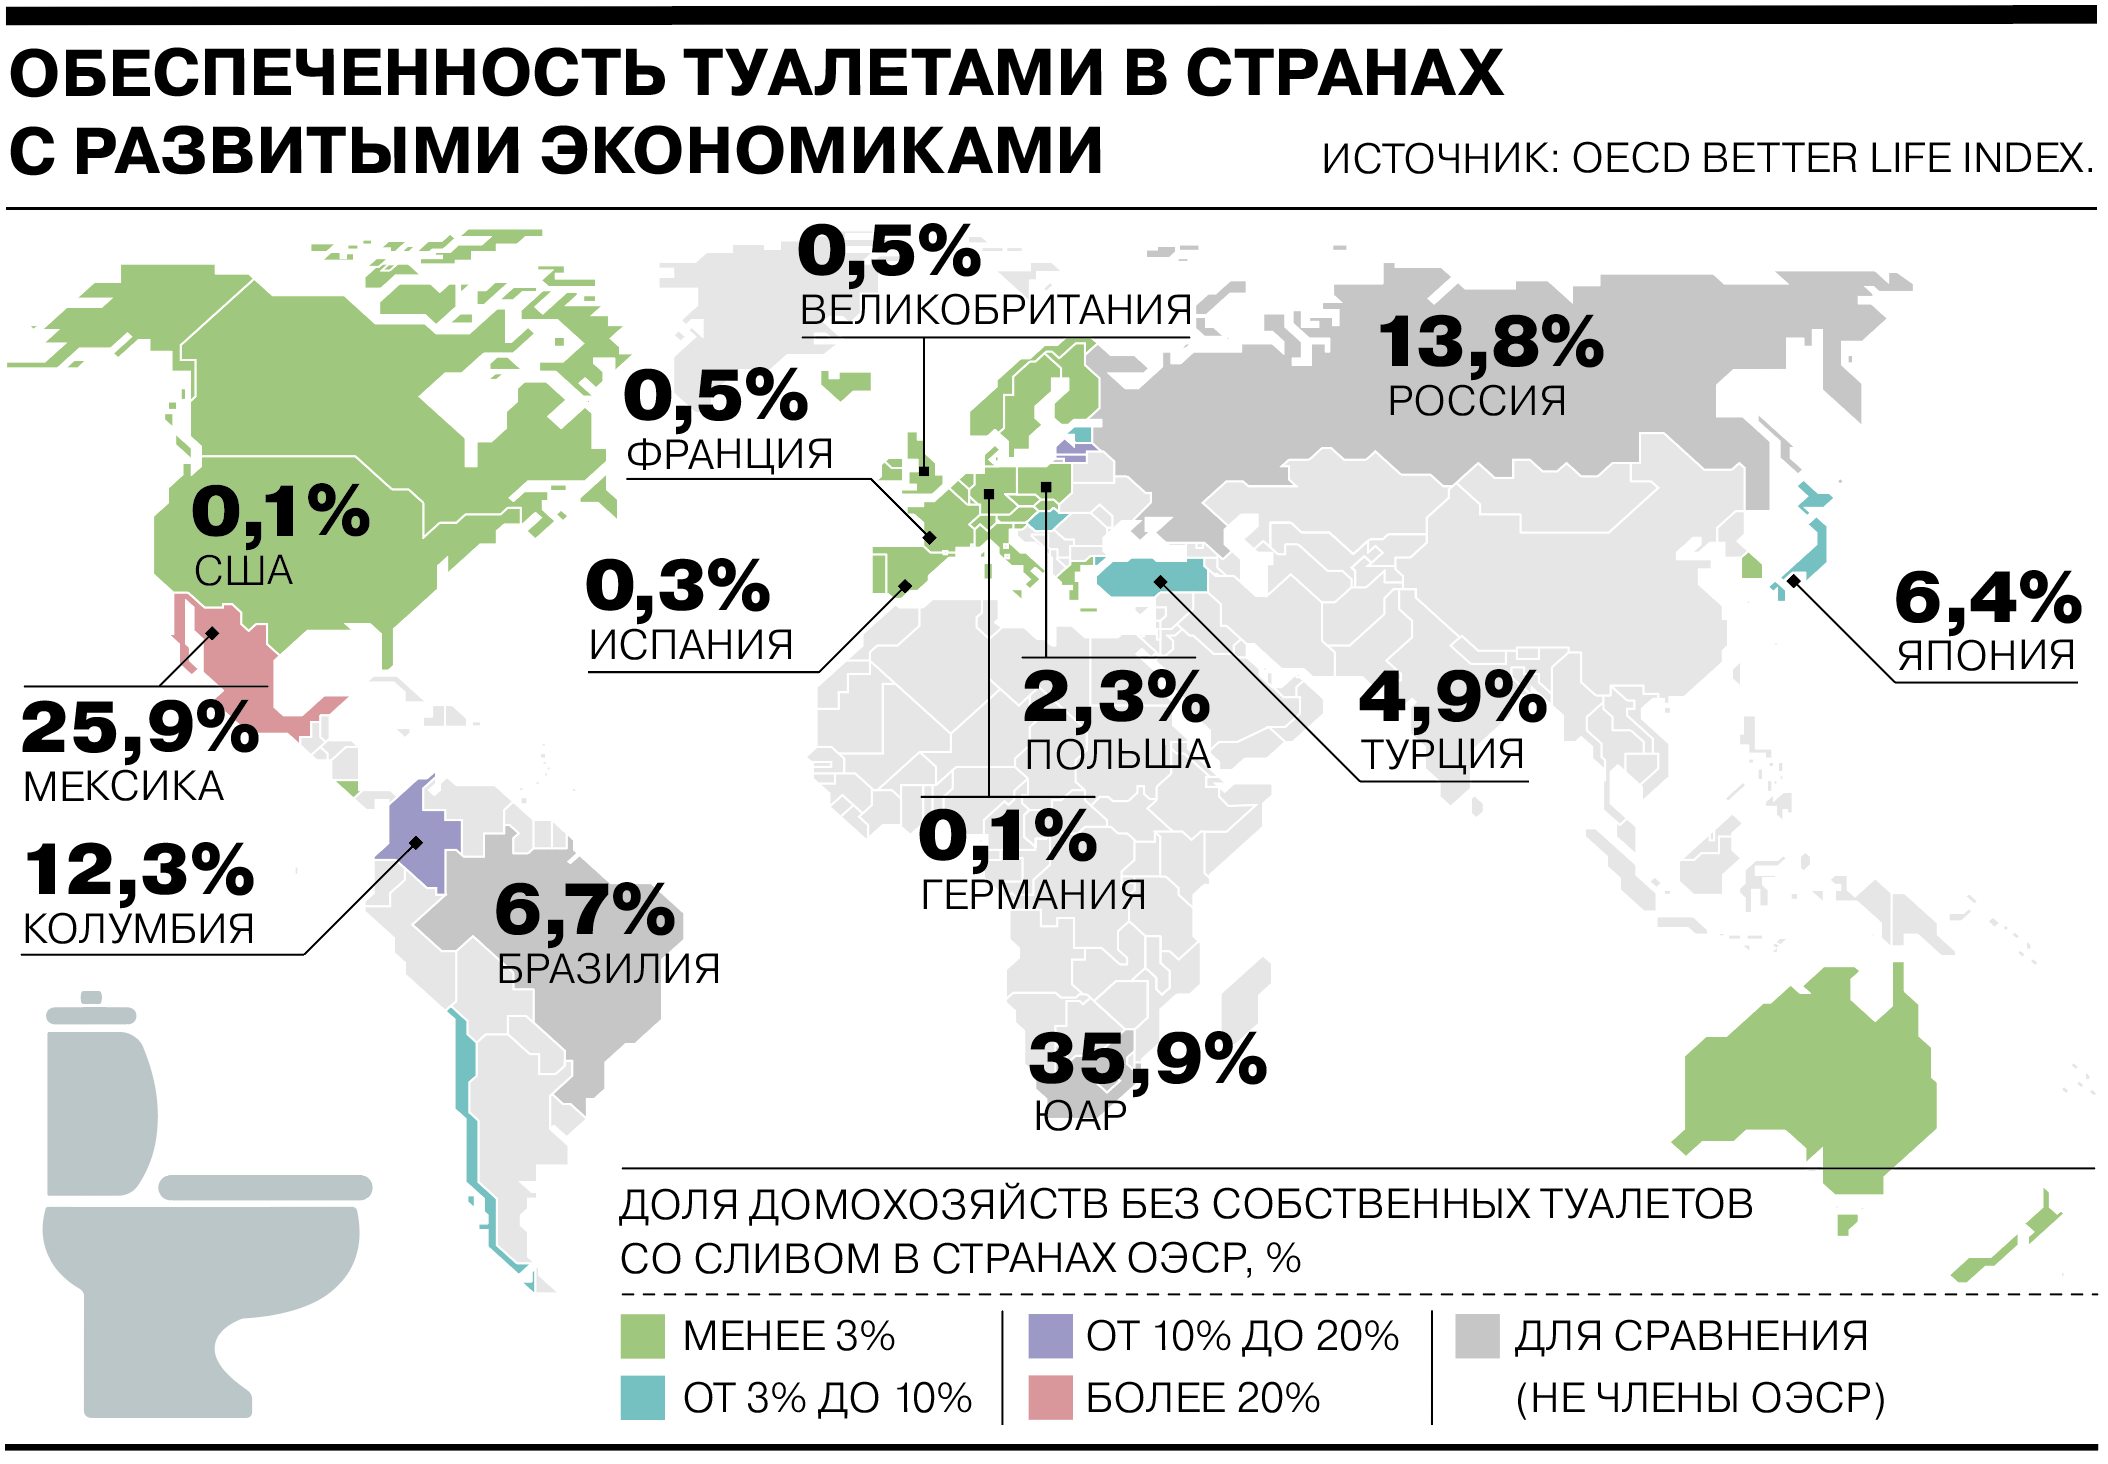 Население страны россии 2022 году. Обеспеченность туалетами в мире. Страны с развивающейся экономикой. Туалеты в разных странах.